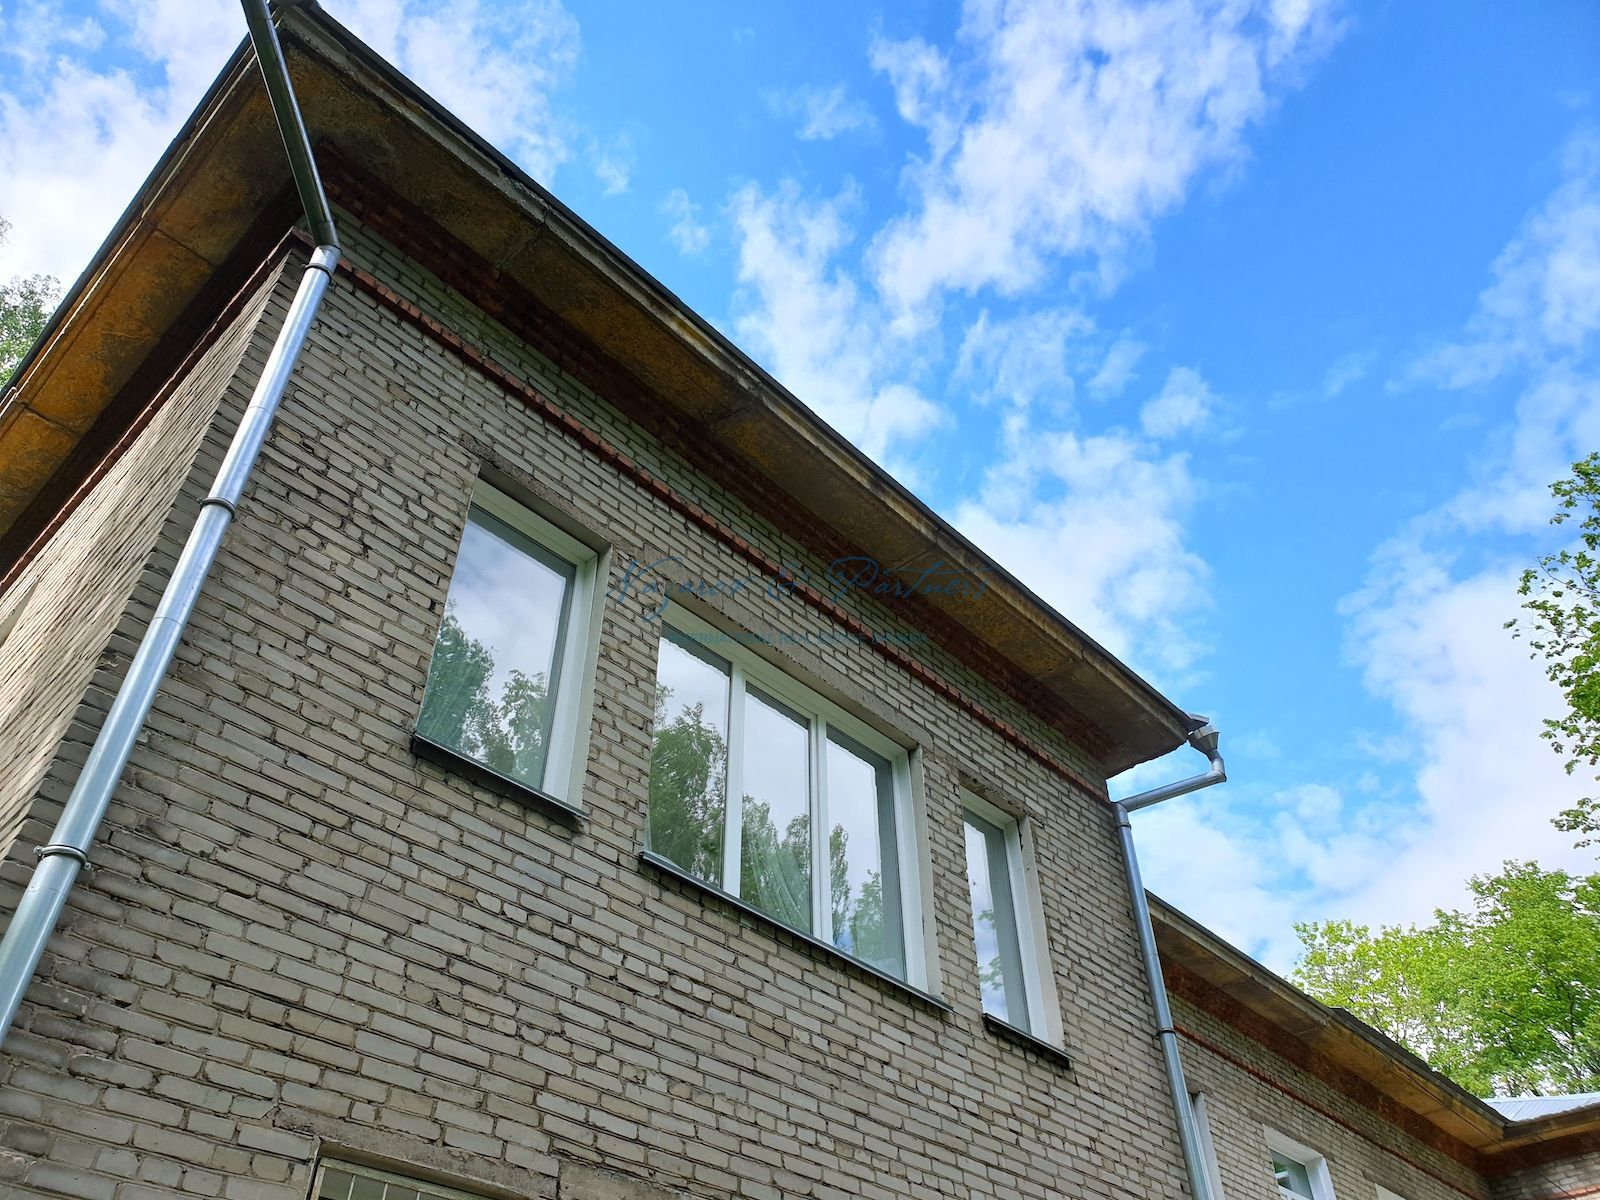 Продажа части здания у Соснового бора в Калининском р-не Новосибирска под клинику, офис, детский центр.